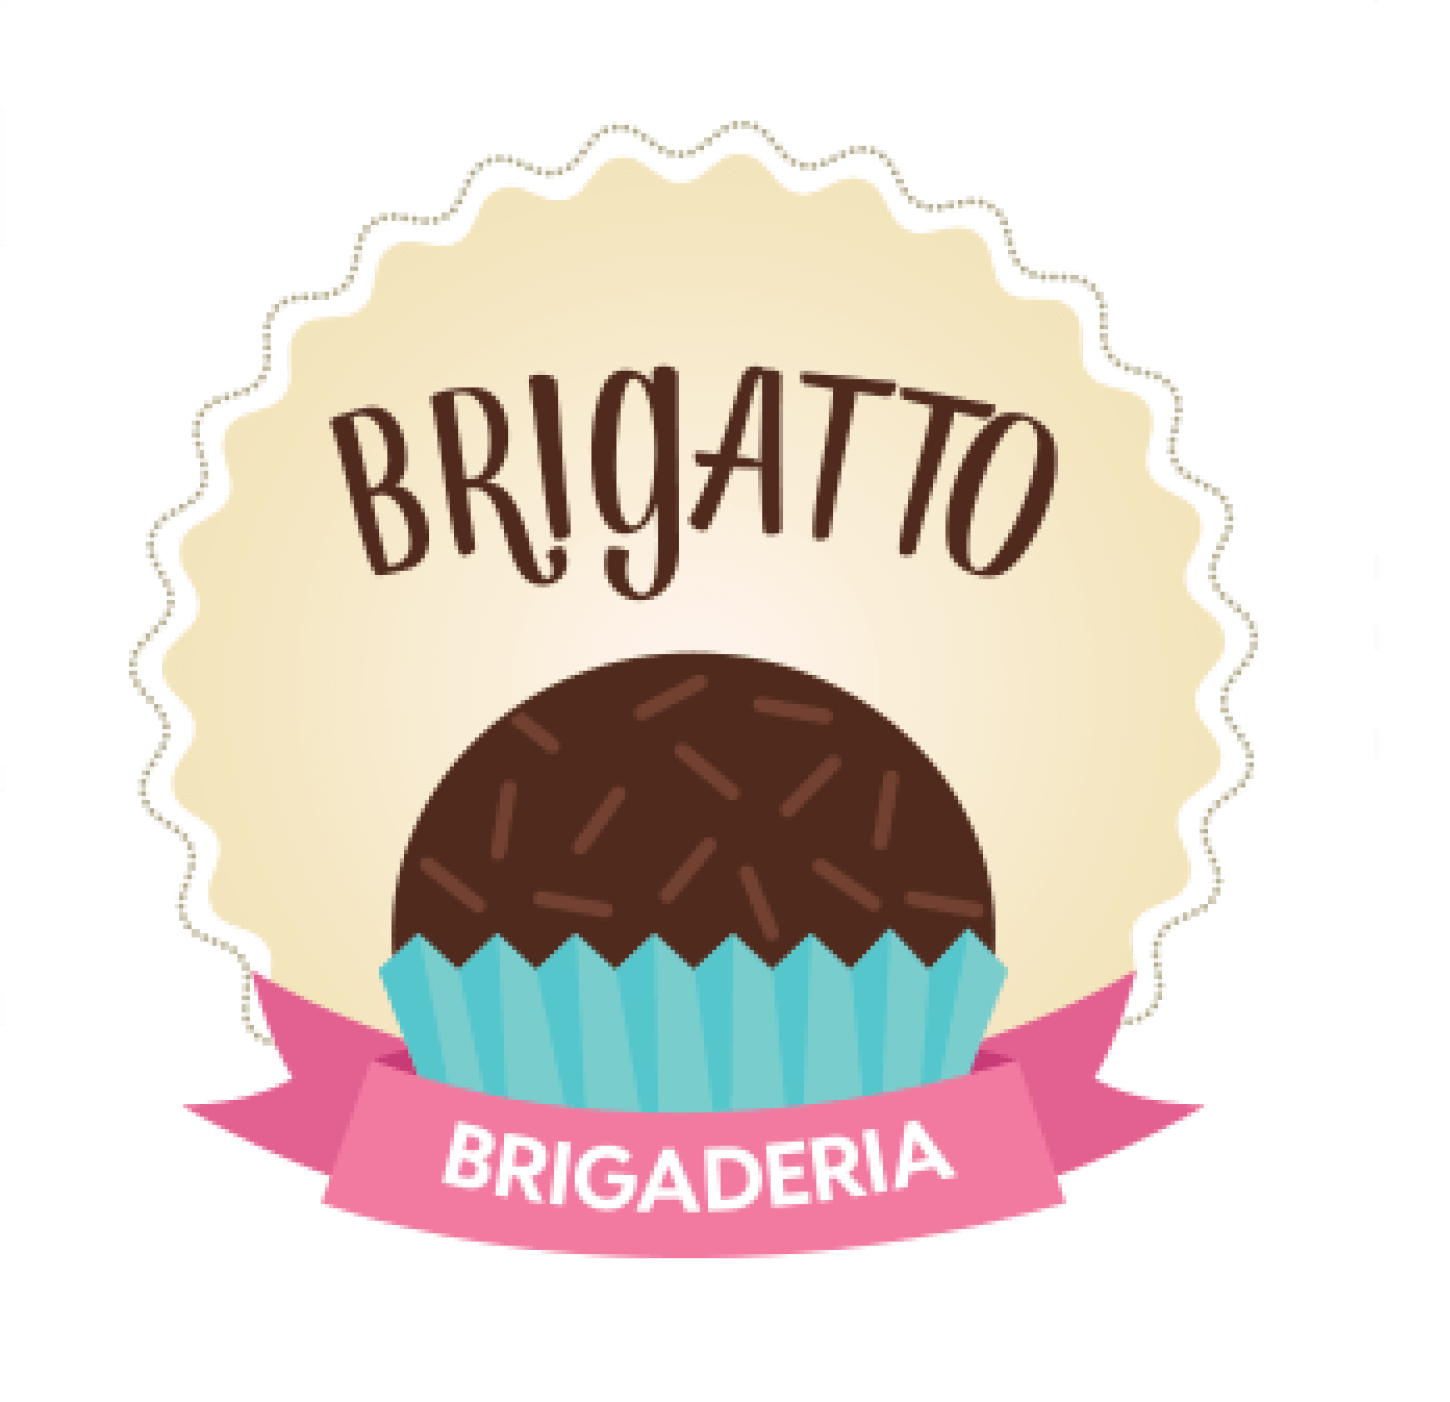 Brigatto Brigaderia